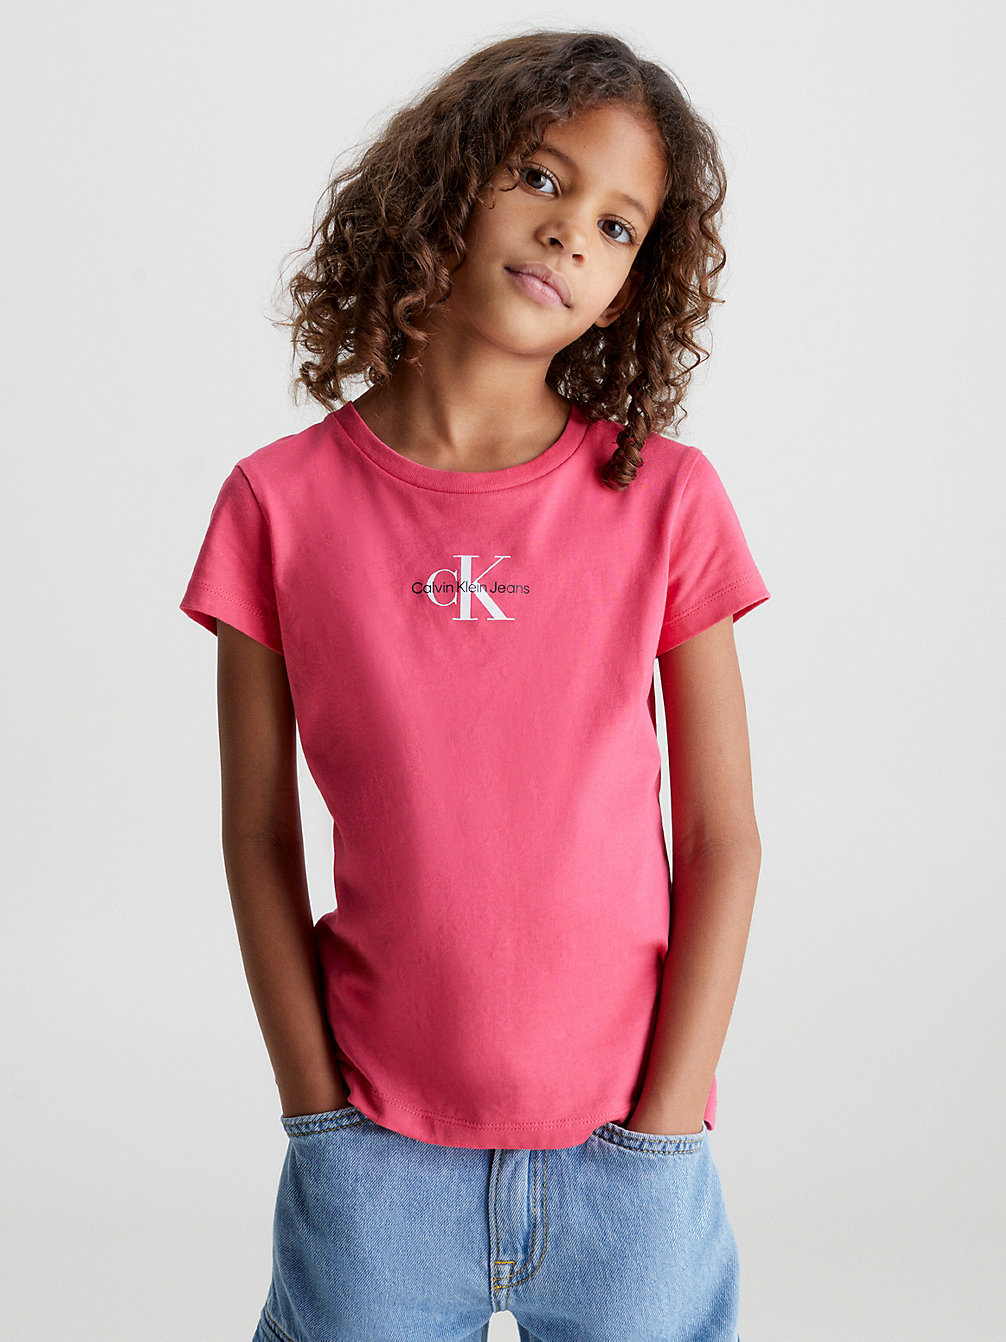 PINK FLASH > Schmales T-Shirt Aus Bio-Baumwolle > undefined girls - Calvin Klein